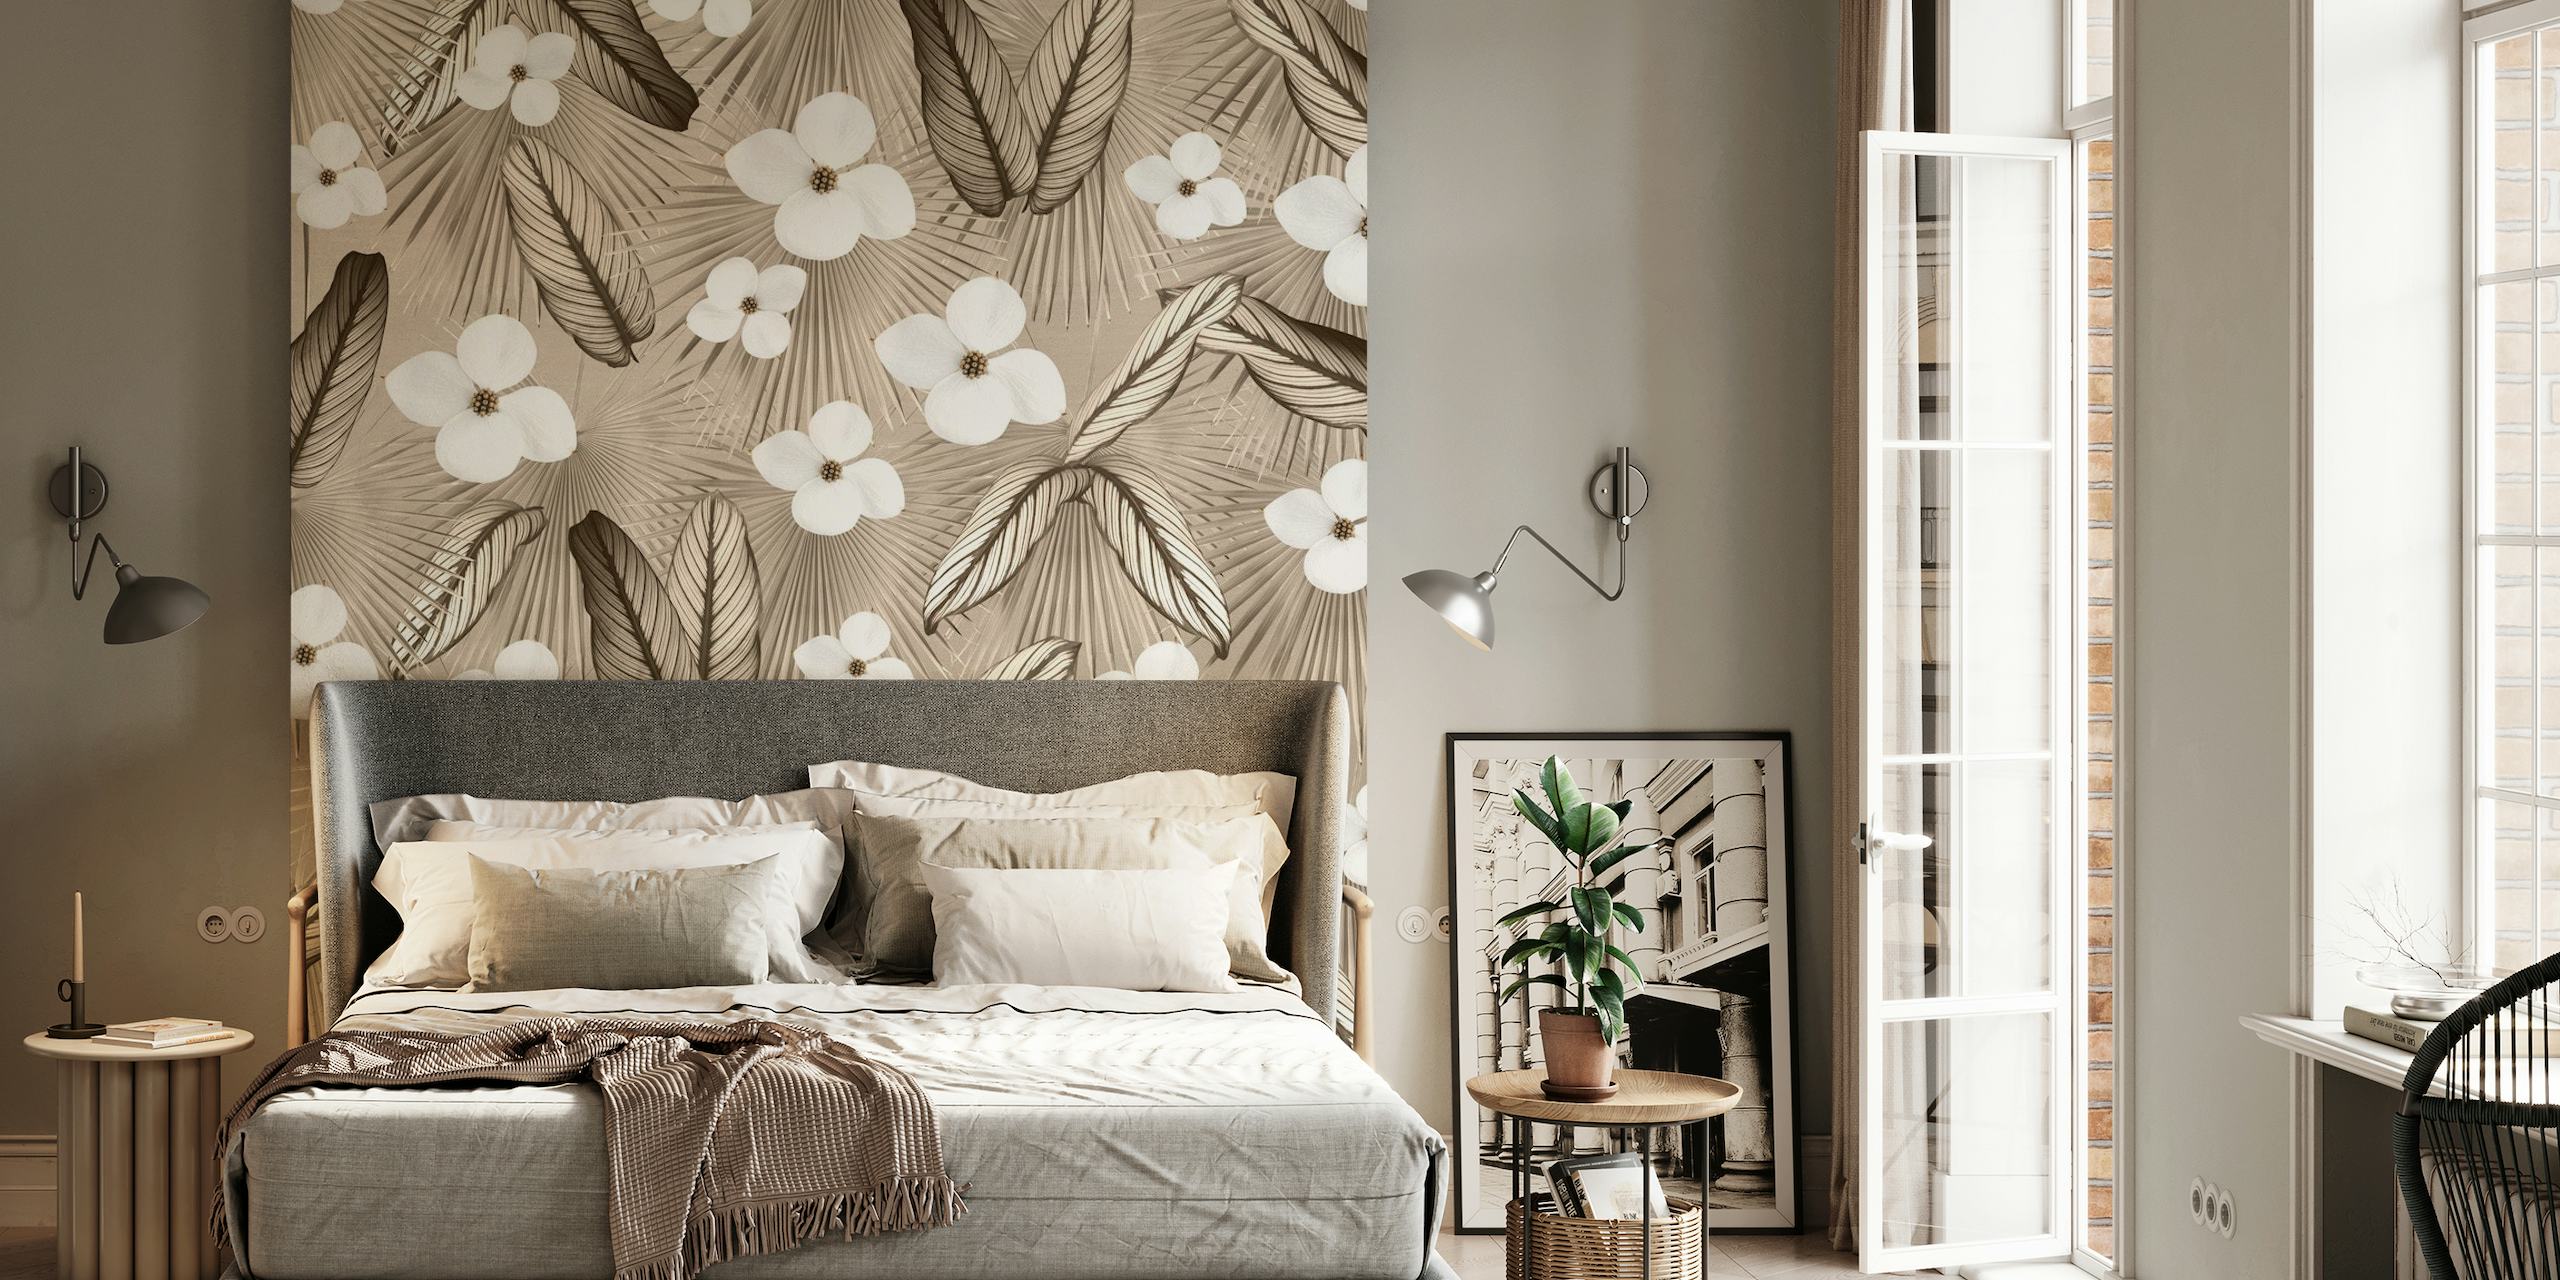 Calathea Fan Palm e mural de parede floral branco em um fundo cinza